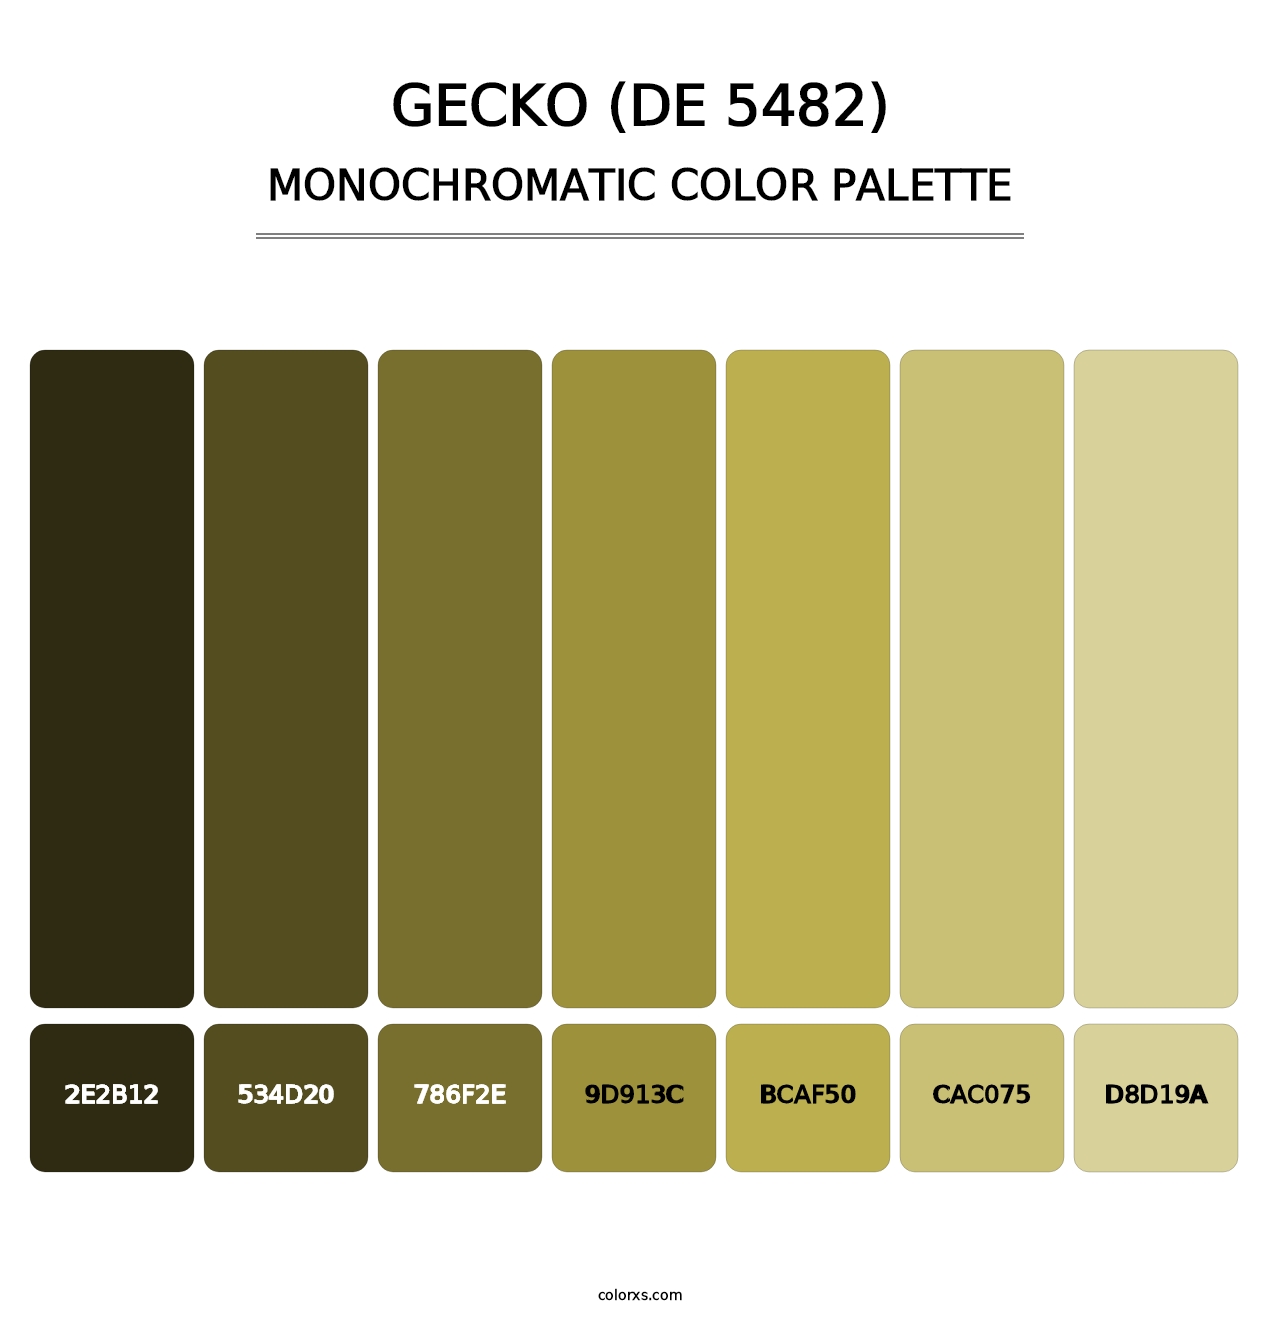 Gecko (DE 5482) - Monochromatic Color Palette